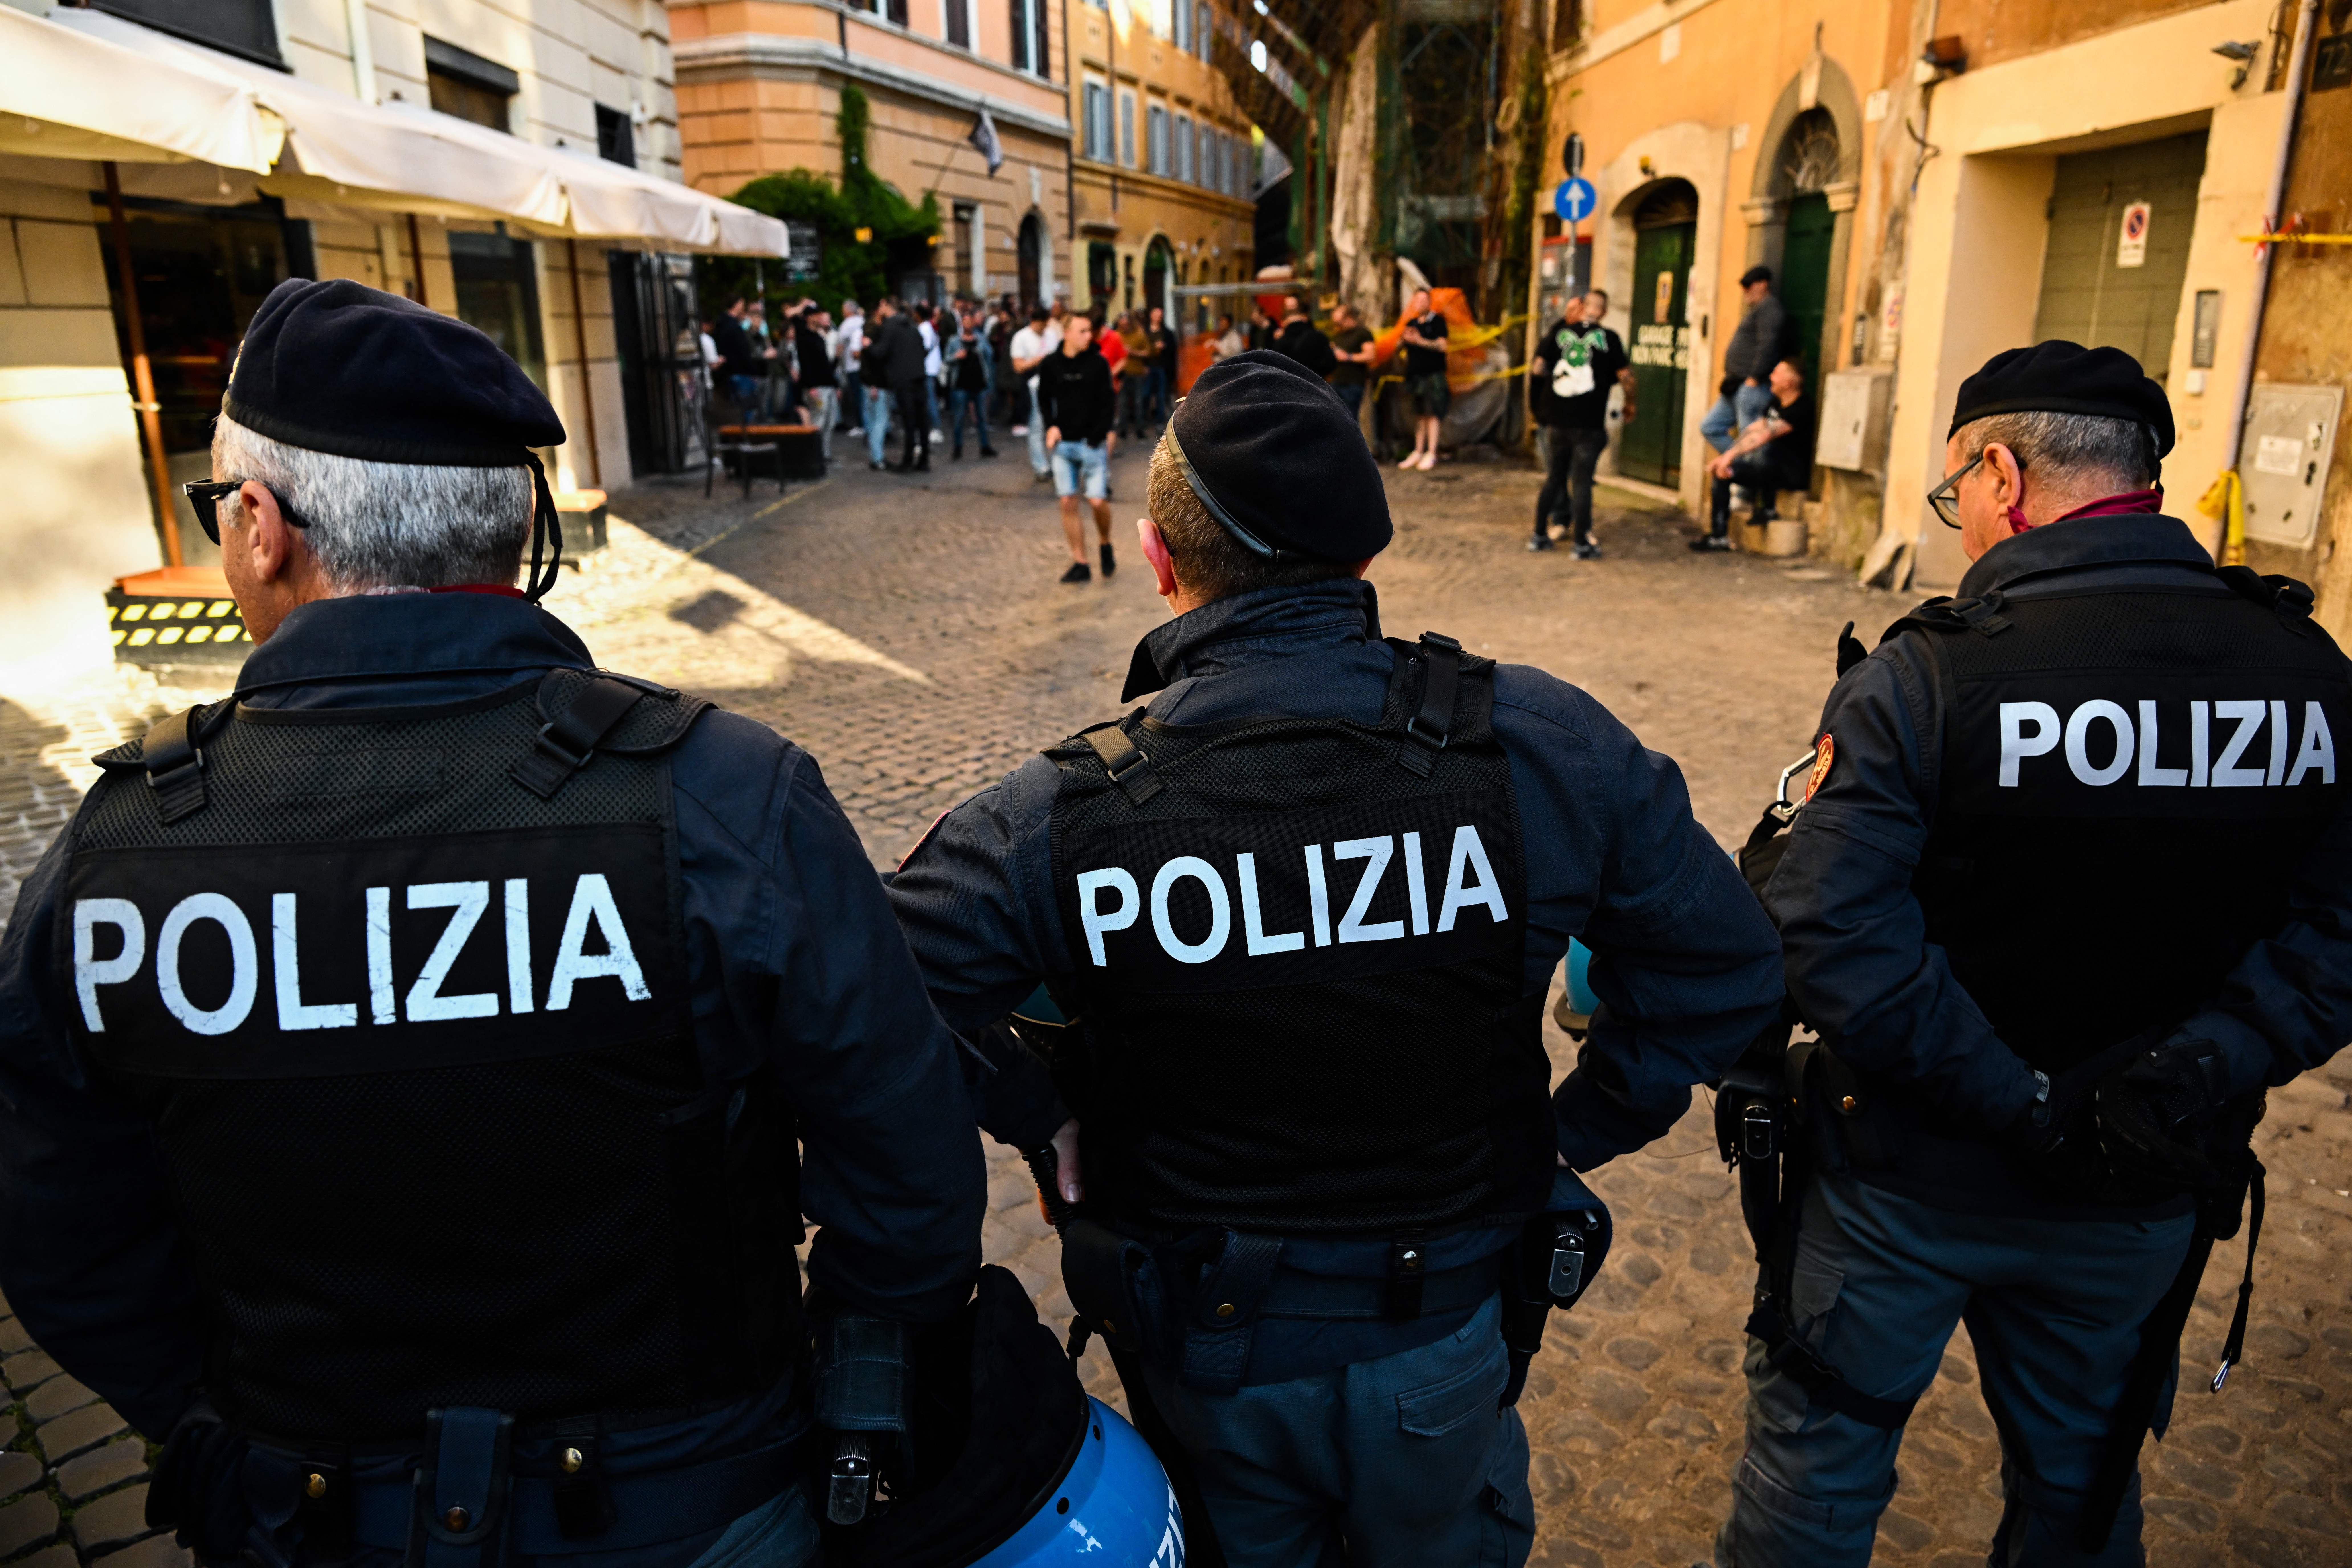 Policía Italiana desmantelo red de narcotráfico. 